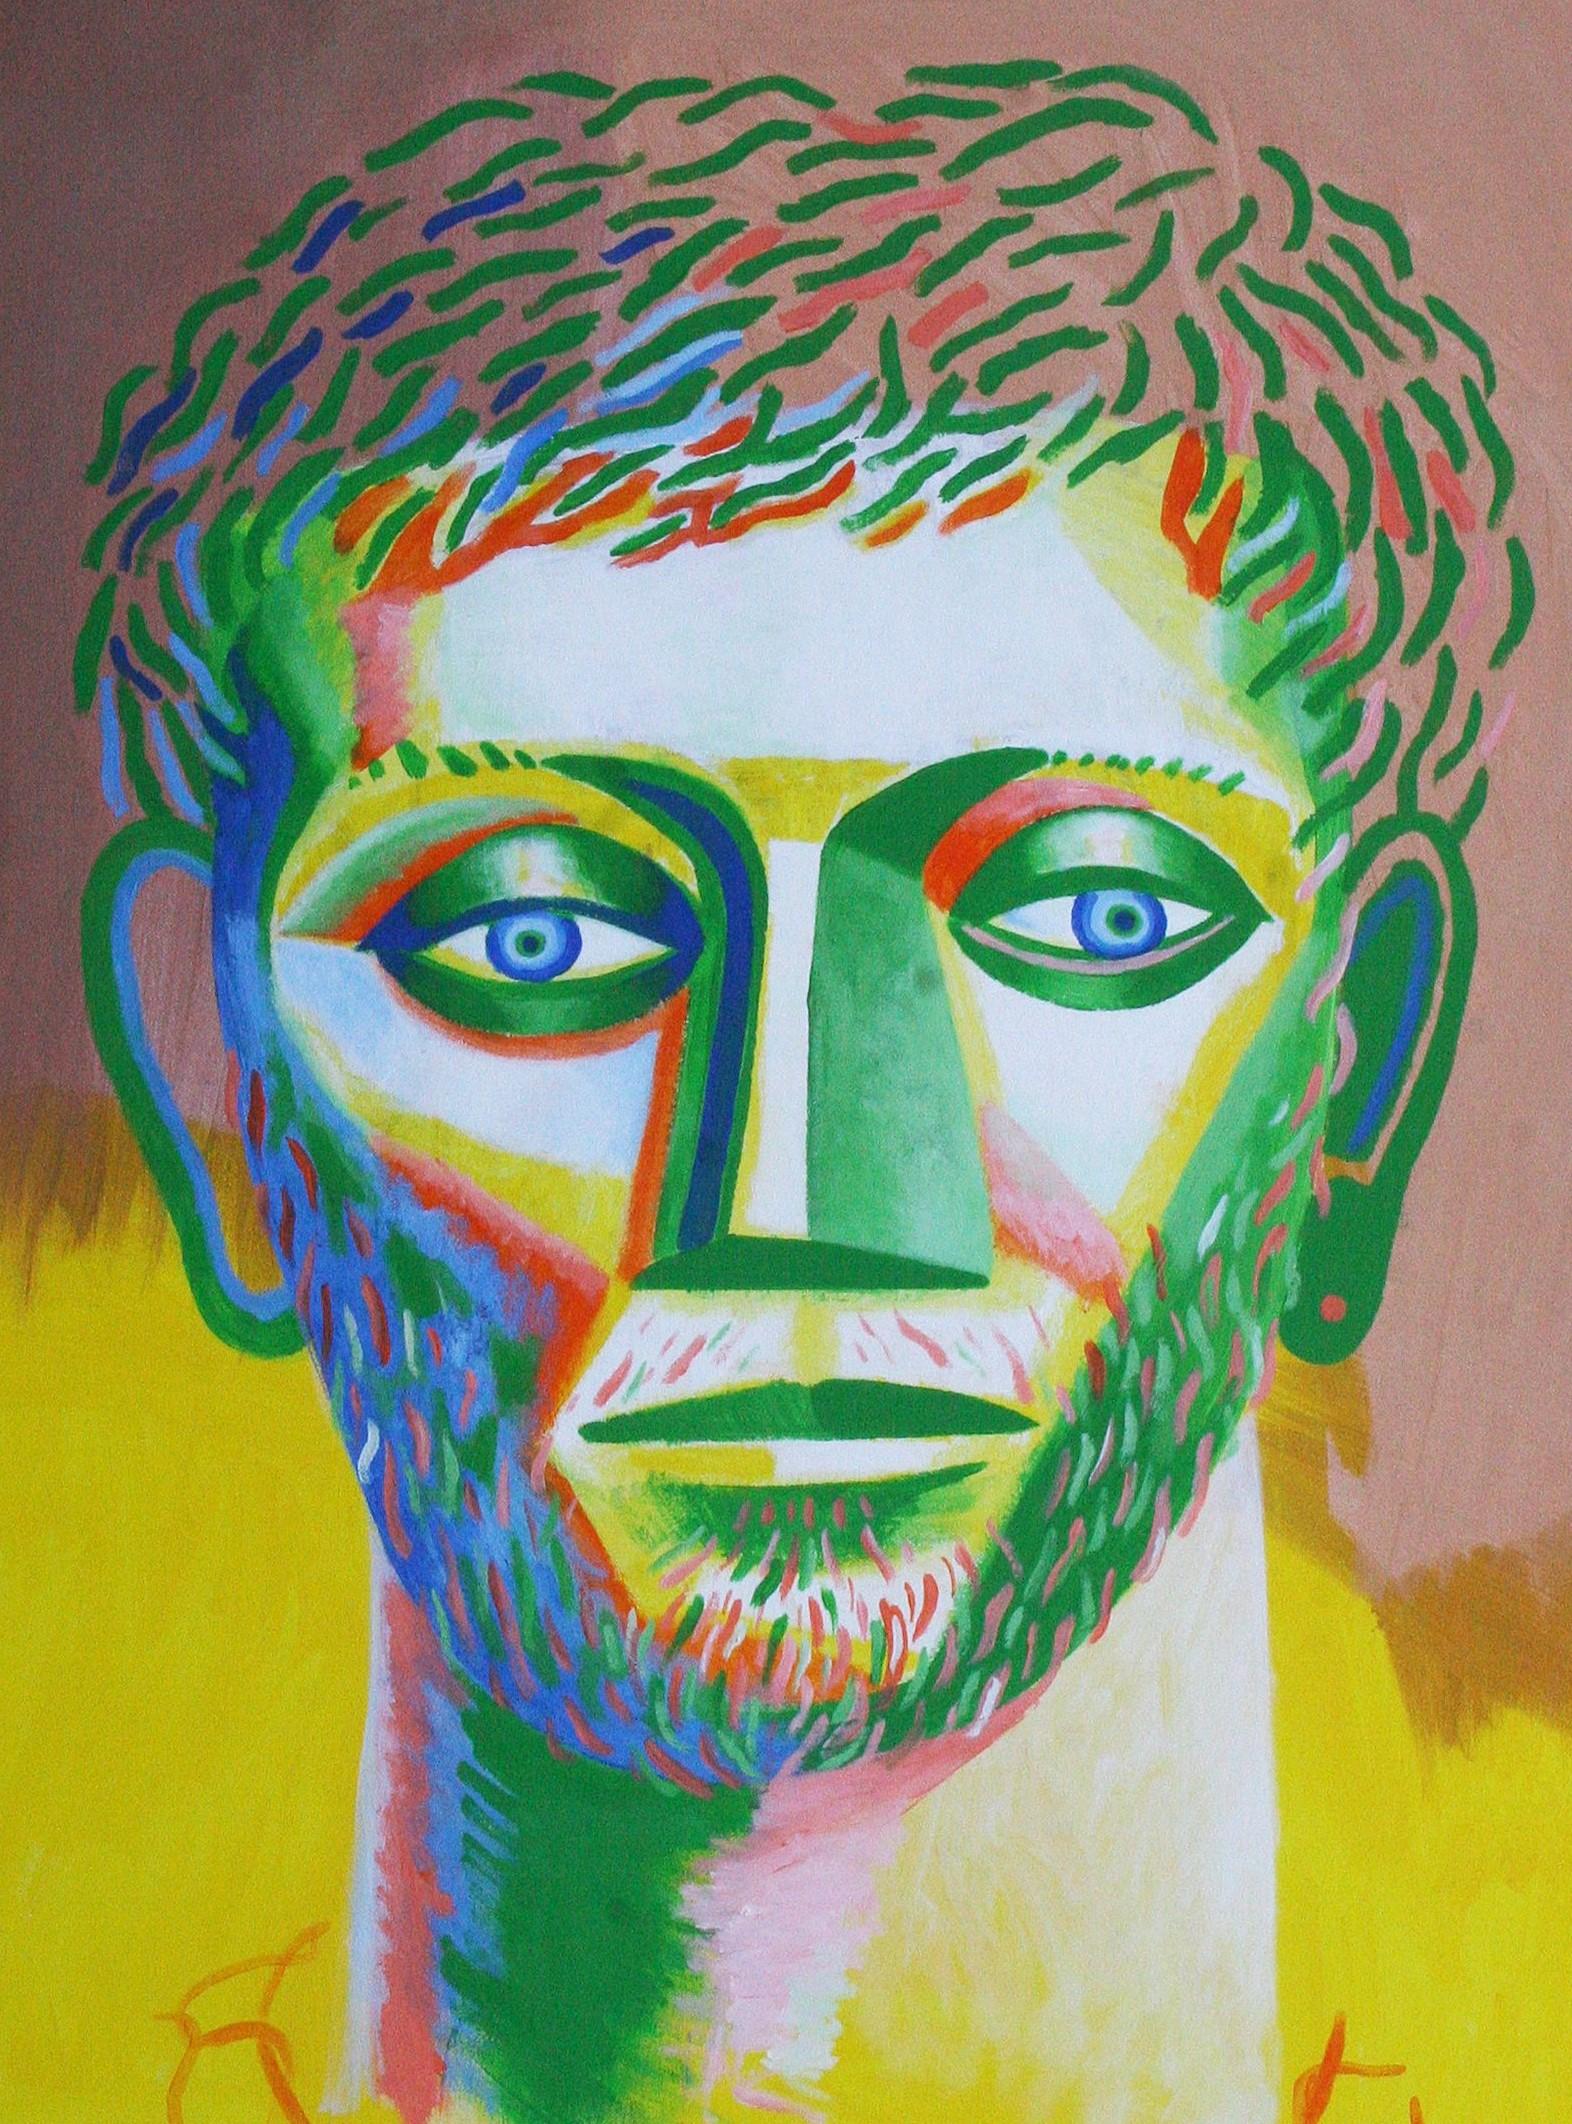 Ohne Titel - Zeitgenössische Kunst, Gelb, Grün, menschliches Porträt, männlich, 21. Jahrhundert – Painting von Alexandru Rădvan